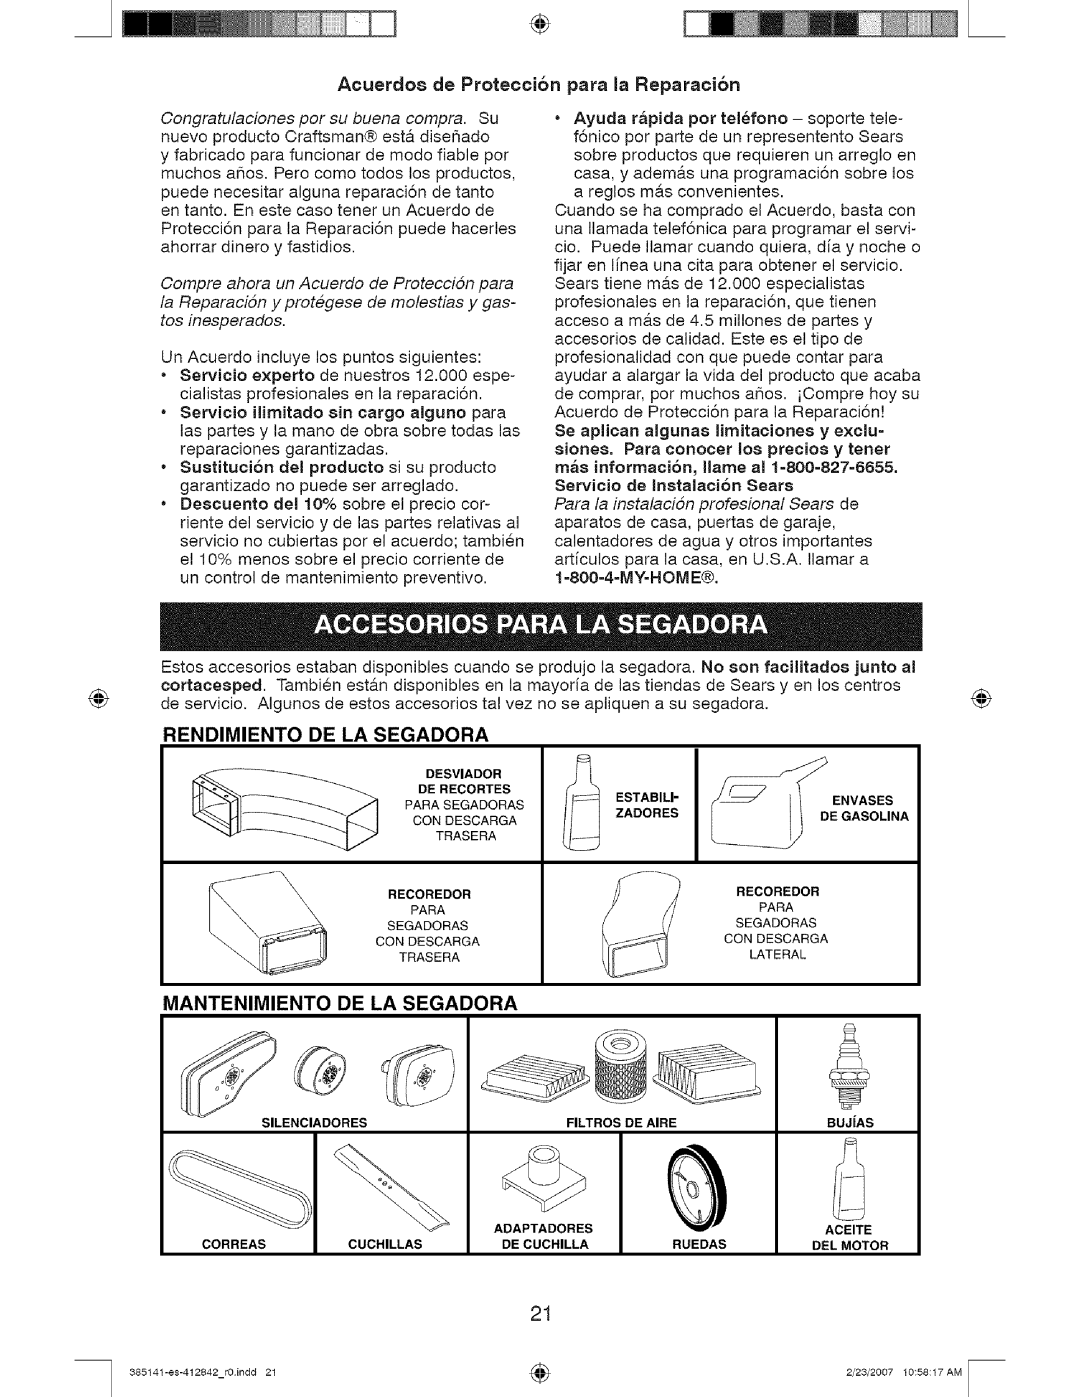 Craftsman 141, 385 owner manual Acuerdo8 de Proteccion para la Reparacion, Rendimiento, De La Segadora, Mantenimiento 